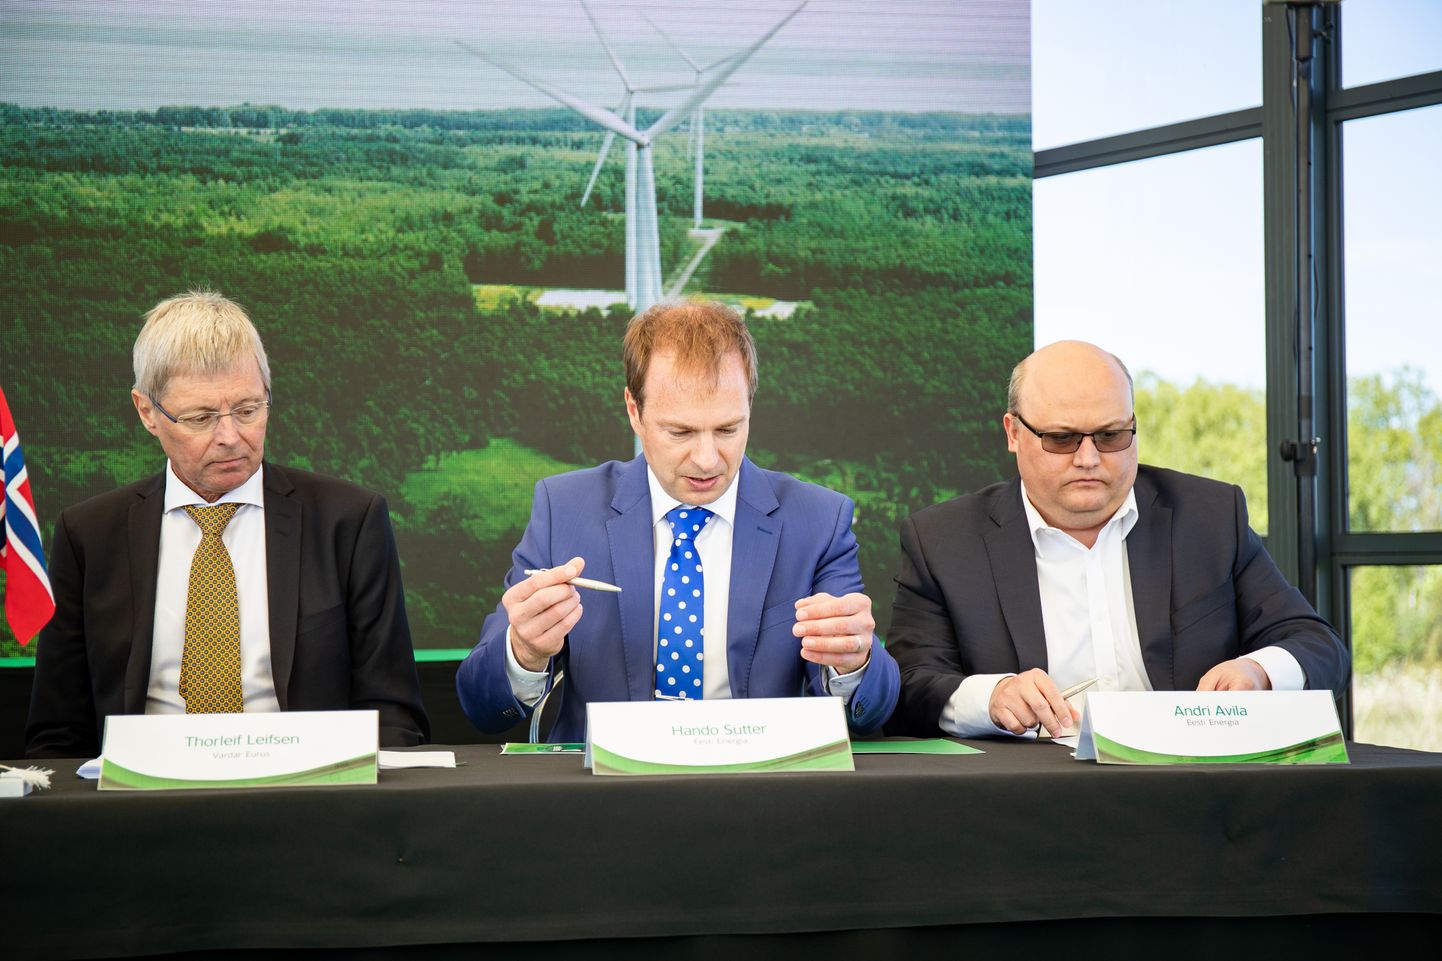 Eesti Energia mõjuvõimu suurenemisele siinsel energiaturul aitab kaasa ka Eesti suurima tuuleenergiatootja Nelja Energia omandamine, millest andsid osapooled teada eile Paldiski tuulepargis. Vasakult: Thorleif Leifsen, Hando Sutter ja Andri Avila.